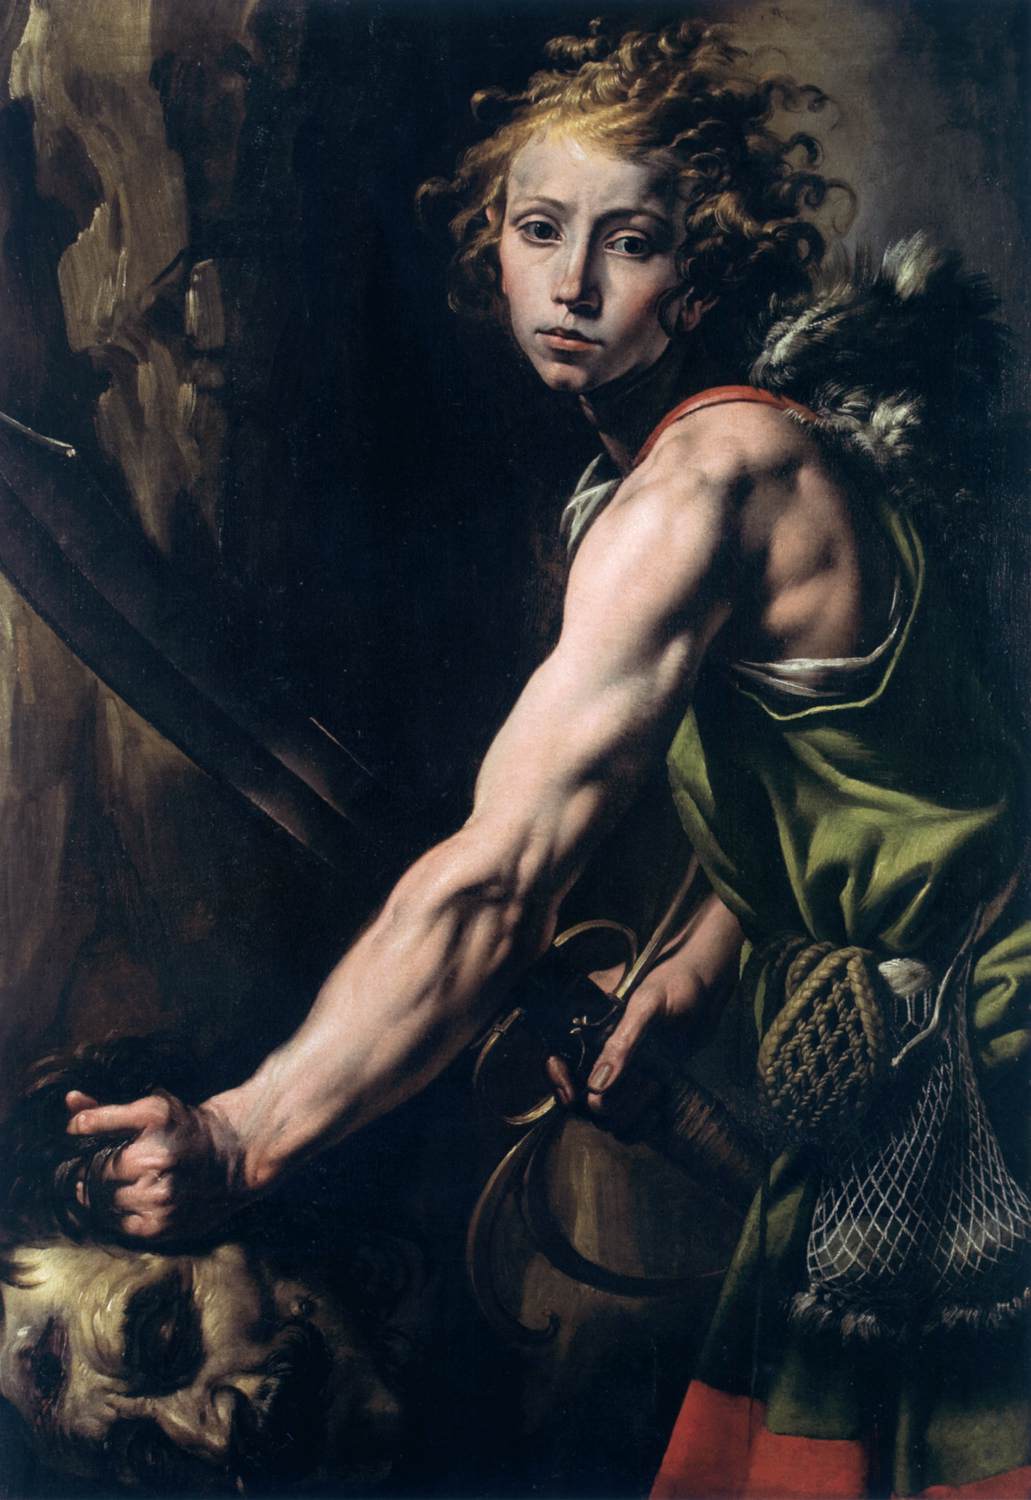 David met Goliath's hoofd